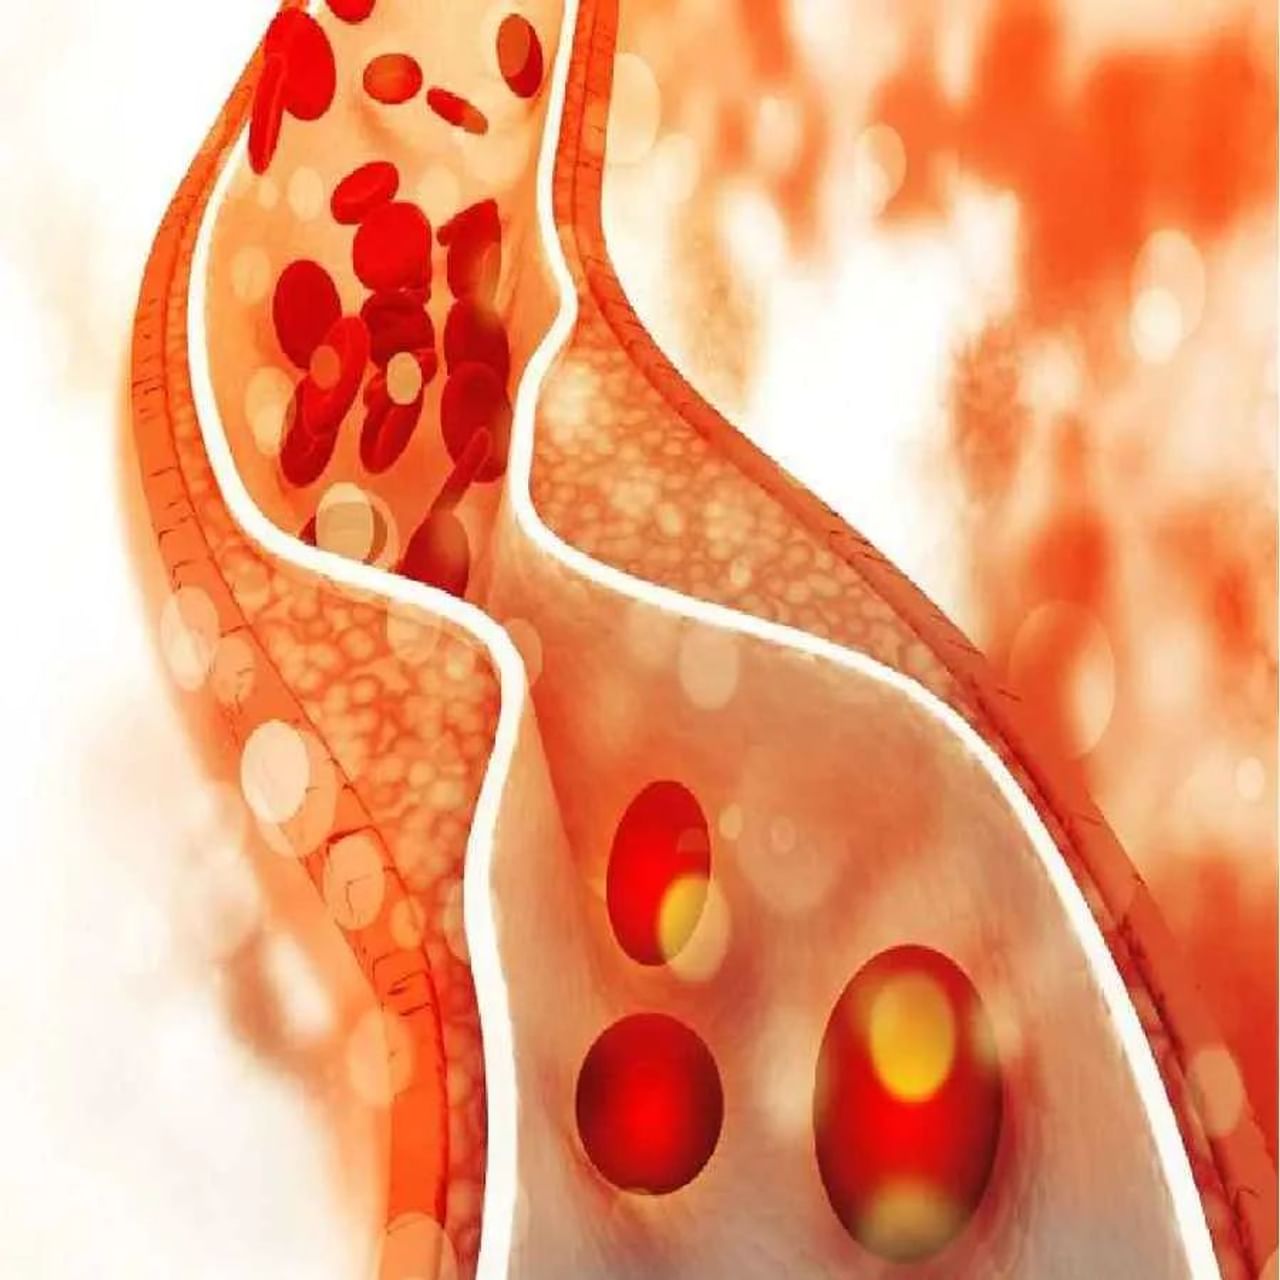 શરીરમાં કોલેસ્ટ્રોલ બે પ્રકારના હોય છે. એક HDL એટલે સારું કોલેસ્ટ્રોલ અને LDL એટલે ખરાબ કોલેસ્ટ્રોલ. ખરાબ કોલેસ્ટ્રોલ લોહીના પ્રવાહને અવરોધે છે. ખરાબ કોલેસ્ટ્રોલને કારણે હૃદય સંબંધિત સમસ્યાઓનો સામનો કરવો પડી શકે છે. આવી સ્થિતિમાં સારી જીવનશૈલી અને સ્વસ્થ આહાર લેવો ખૂબ જ જરૂરી છે. ચાલો જાણીએ કે ખરાબ કોલેસ્ટ્રોલ ઘટાડવા માટે તમે કયા શાકભાજીને આહારમાં સામેલ કરી શકો છો.